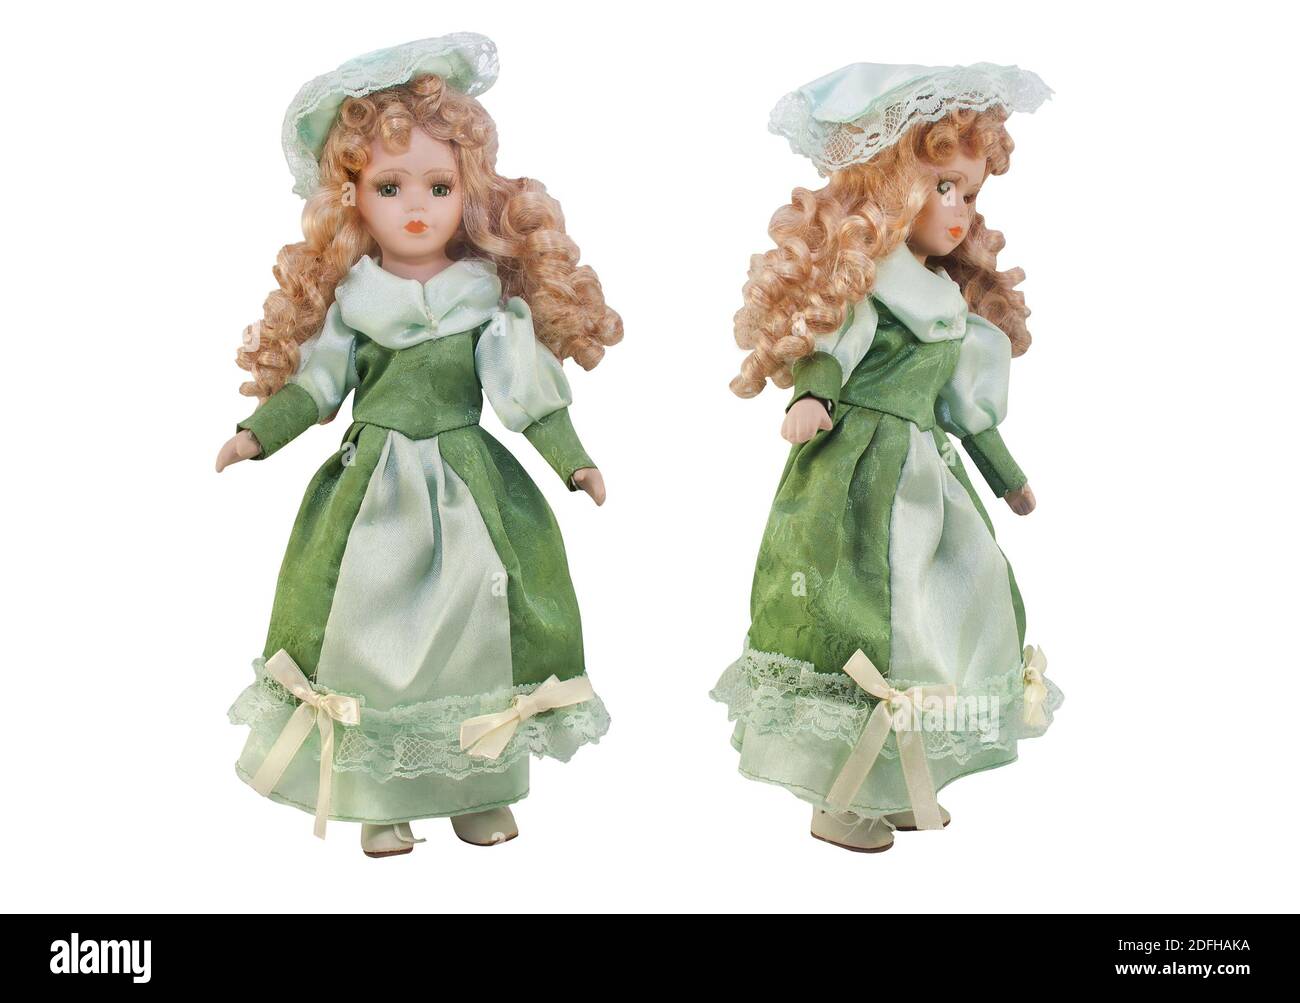 Isoliertes Foto von altmodischen Puppe in grünem Kleid mit Hut und lockiges Haar auf weißem Hintergrund. Stockfoto